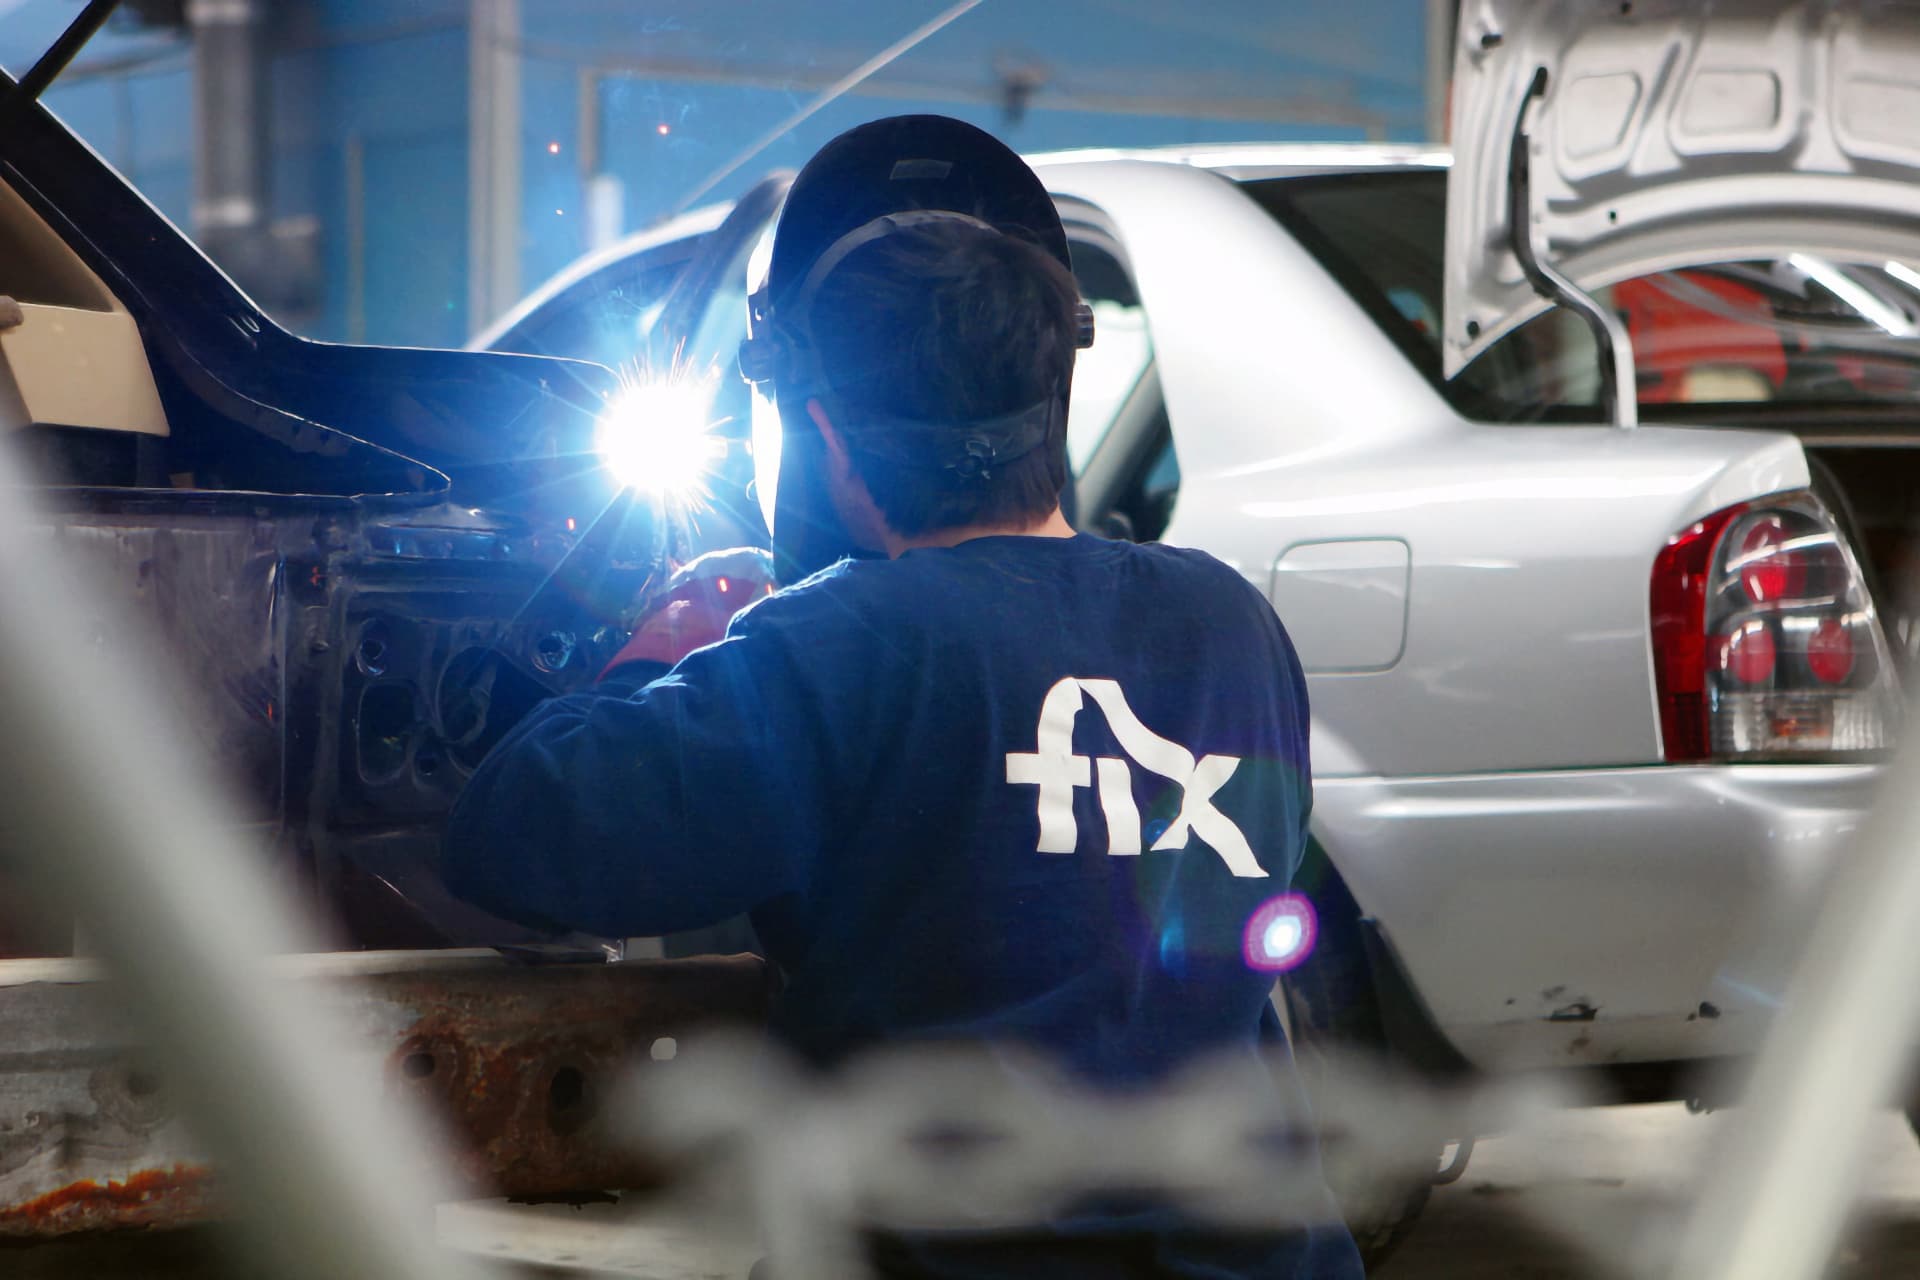 Fix Auto Celebrates 30th Anniversary